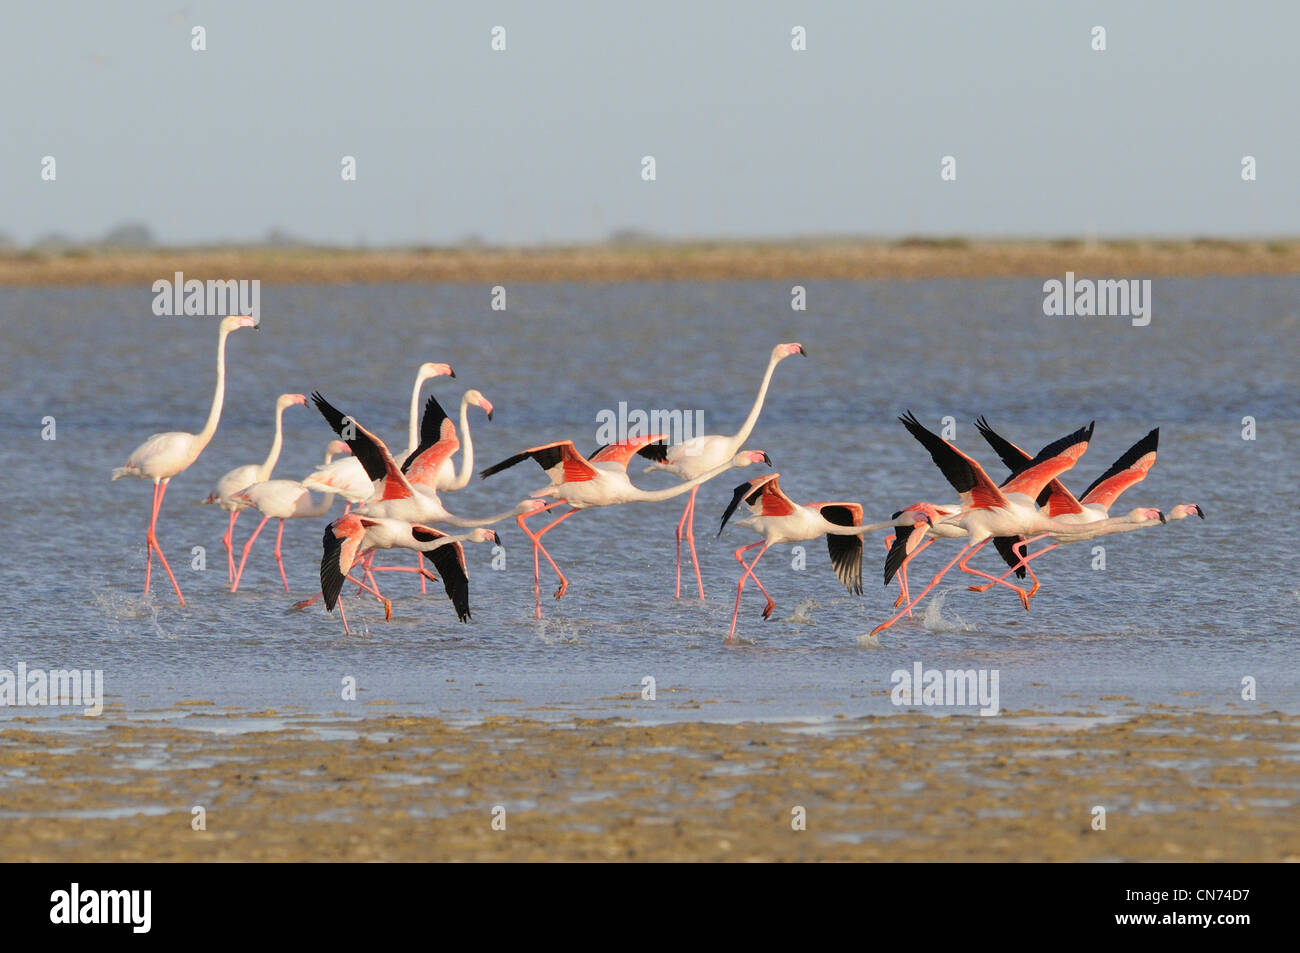 Größere Flamingo Phoenicopterus Ruber Einnahme Flug fotografiert in der Camargue, Frankreich Stockfoto